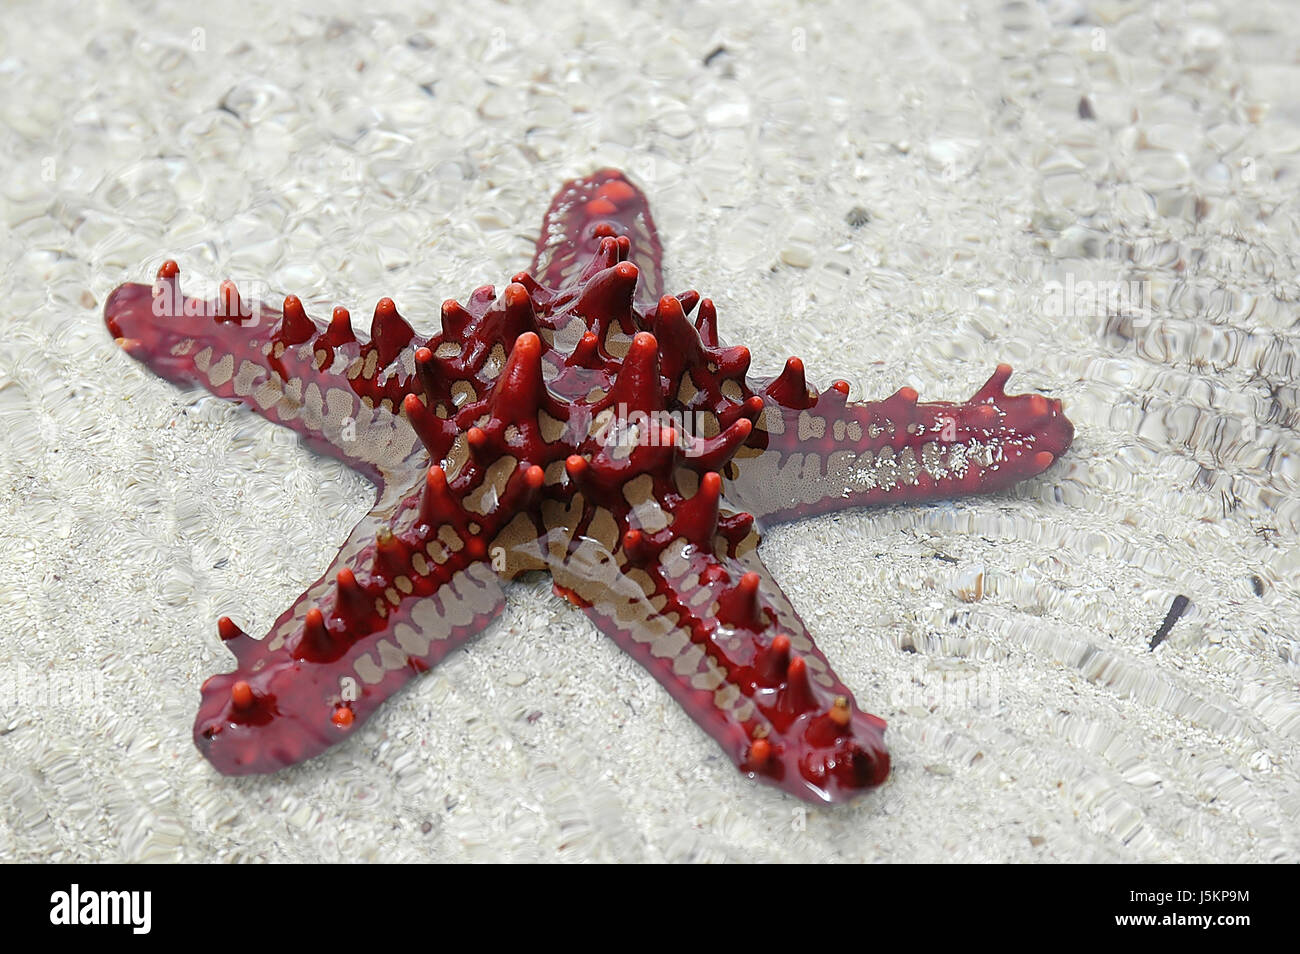 poor man starfish red tropics echinoderm shine shines bright lucent light Stock Photo